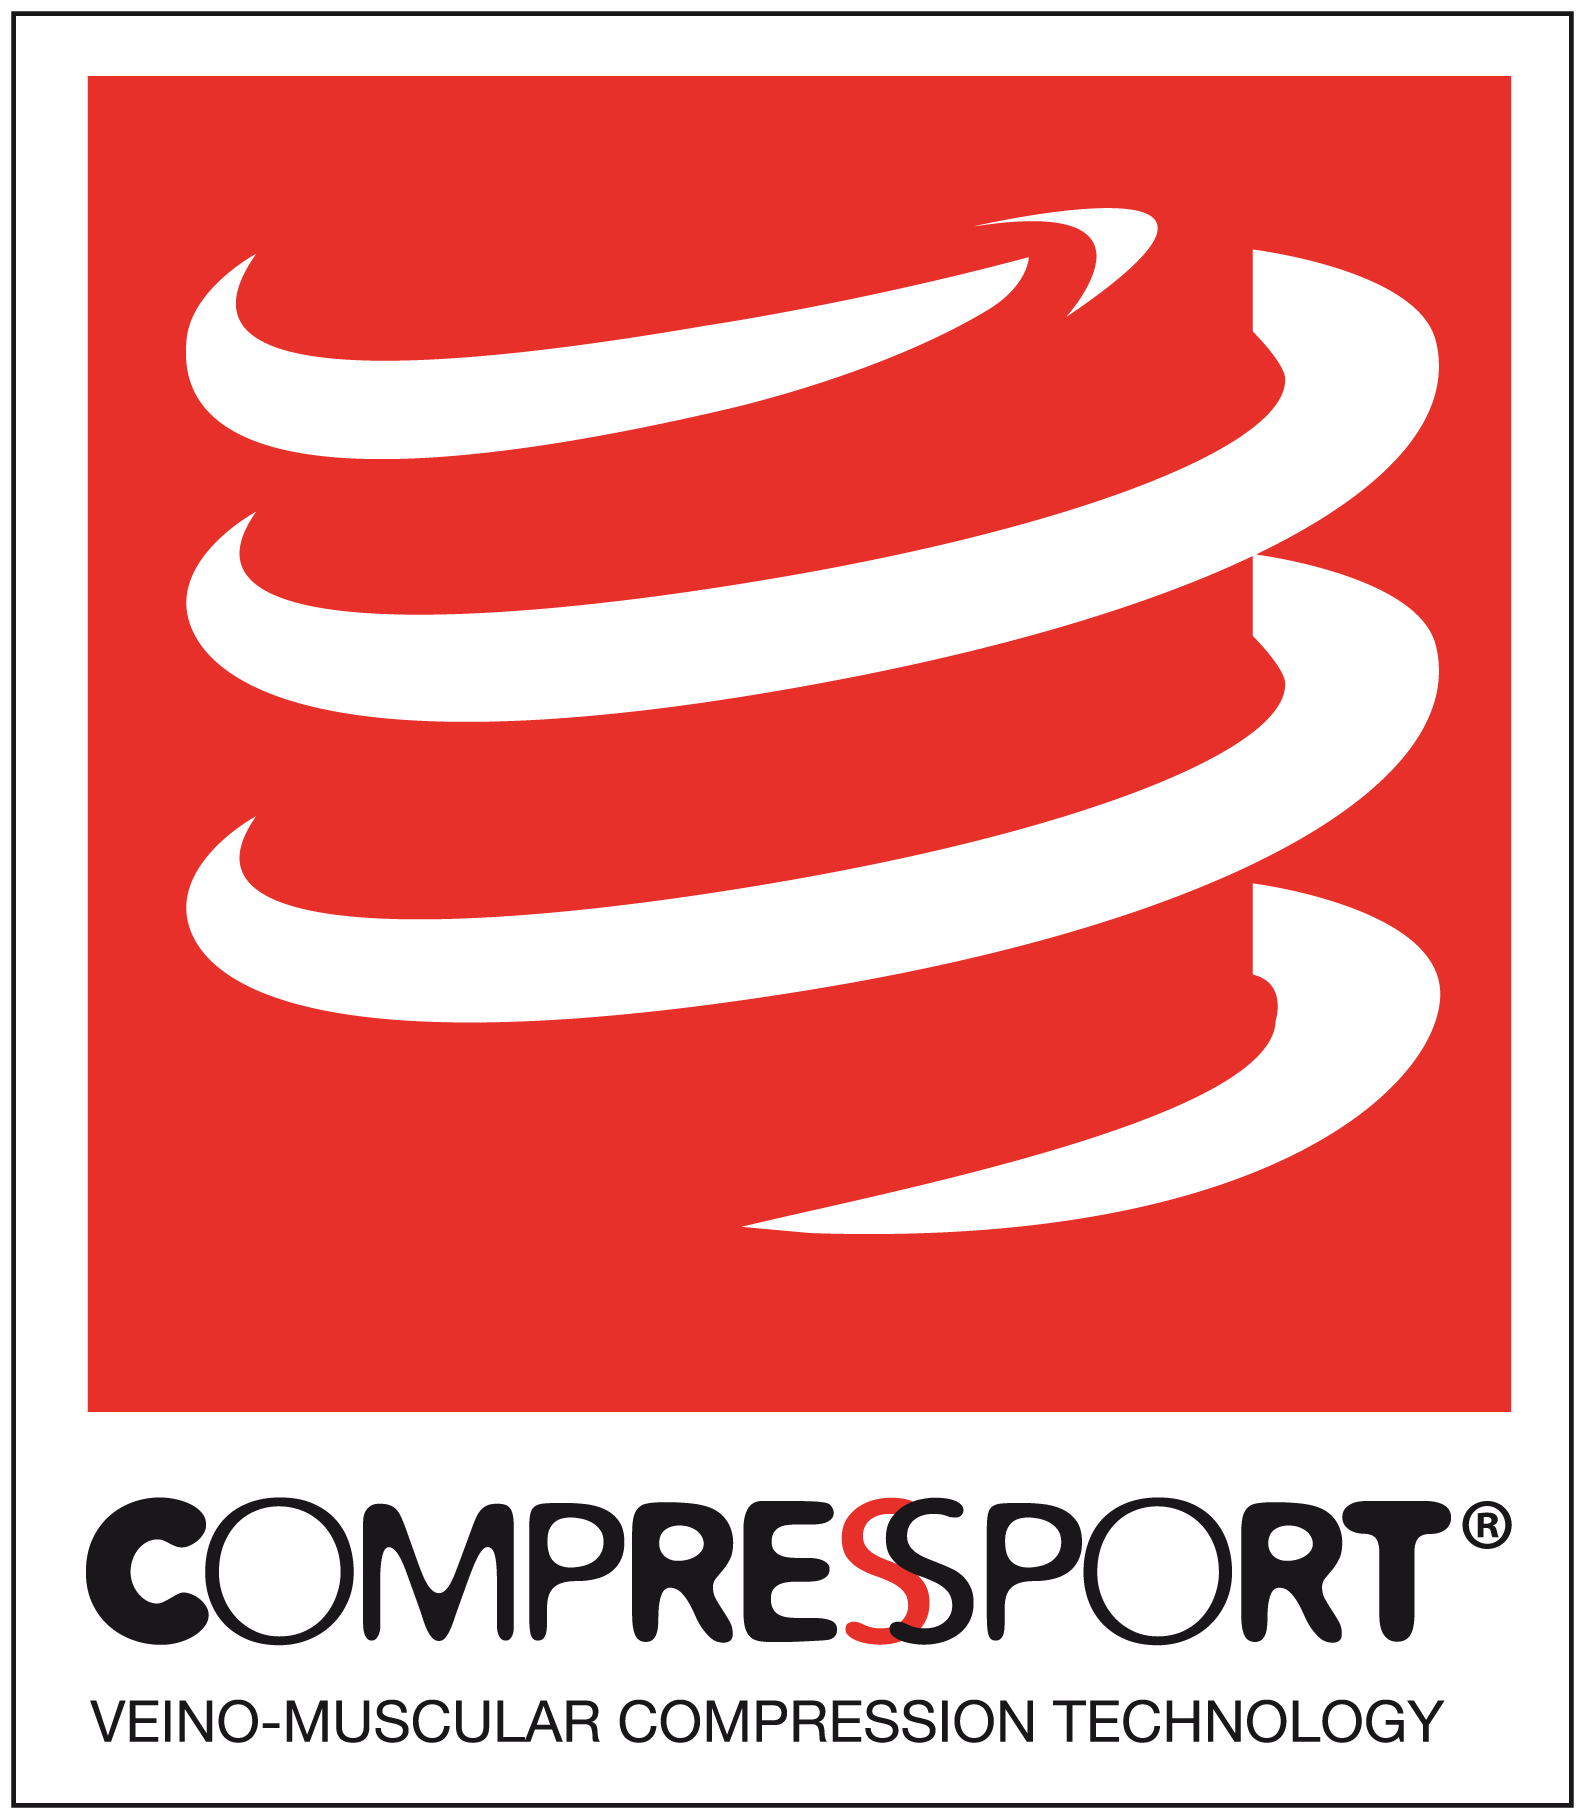 compressport logo 2.png